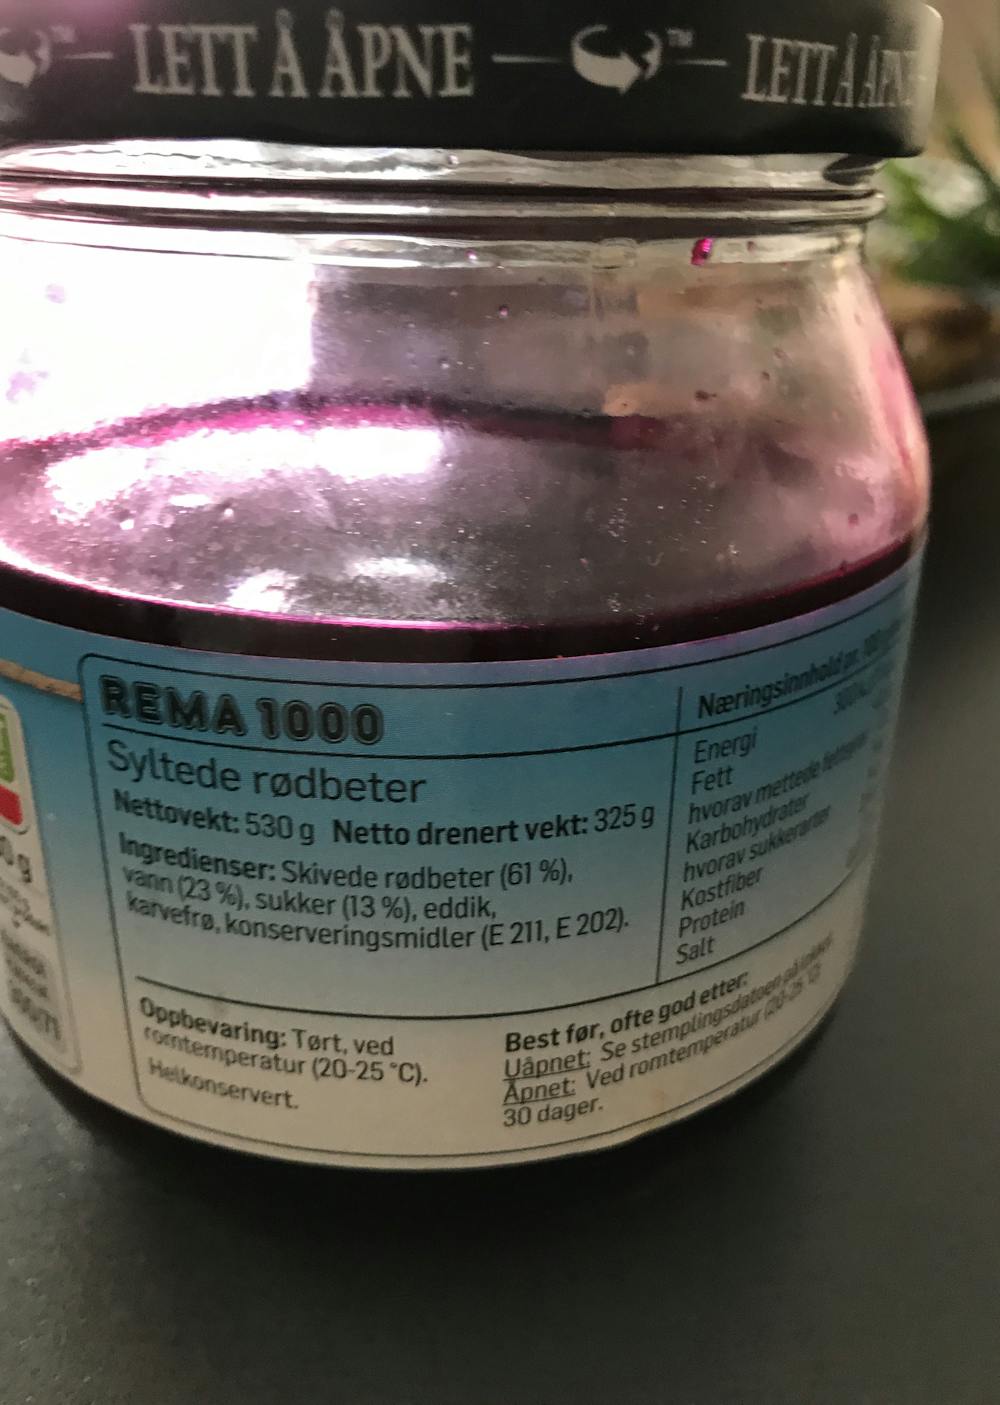 Ingredienslisten til Rema1000 Syltende rødbeter